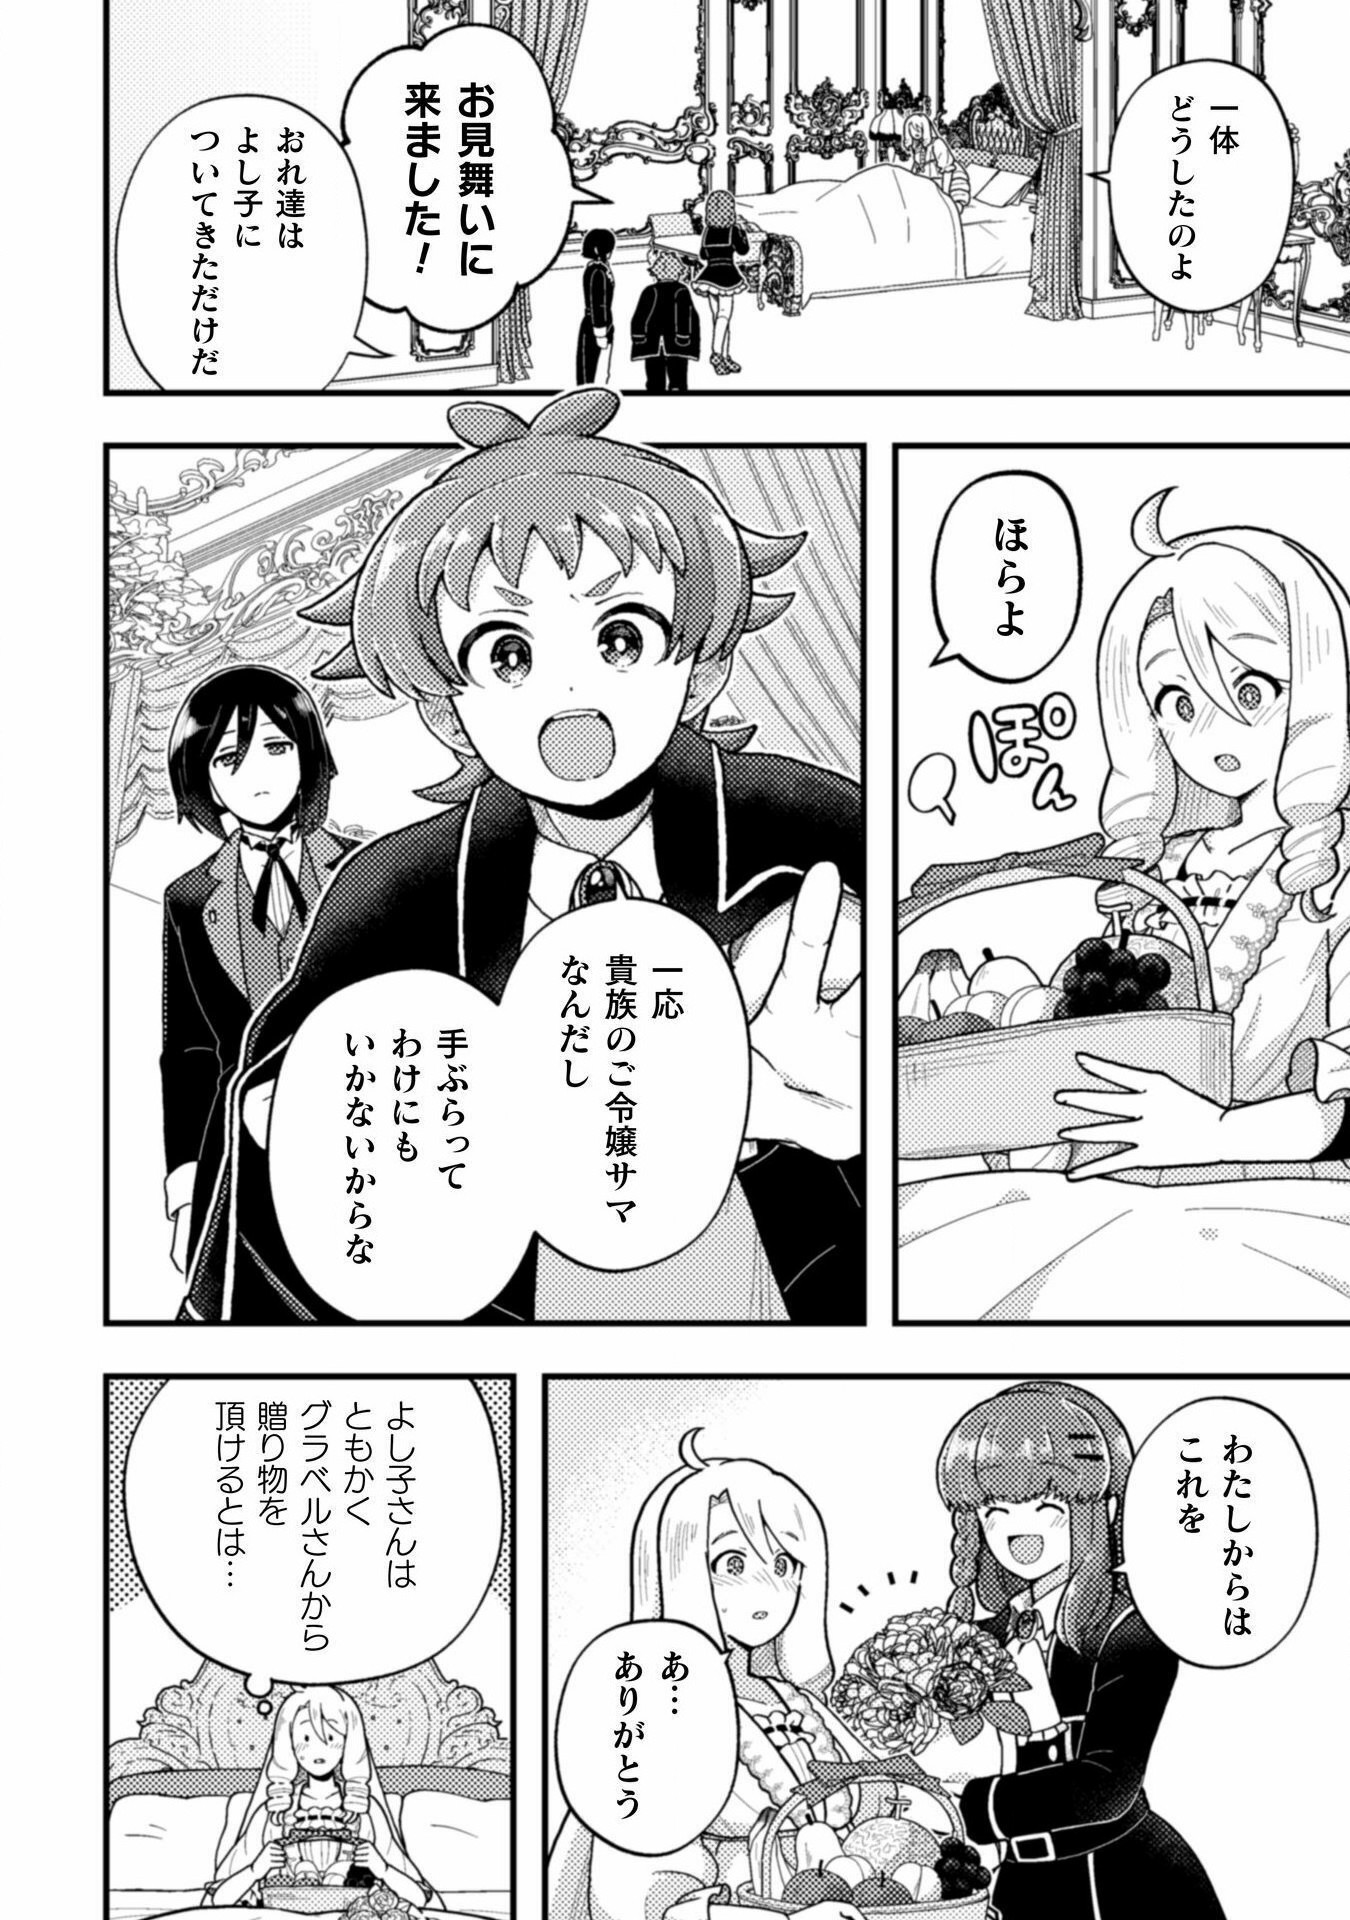 Otome Game no Akuyaku Reijou ni Tensei shitakedo Follower ga Fukyoushiteta Chisiki shikanai - Chapter 20 - Page 6